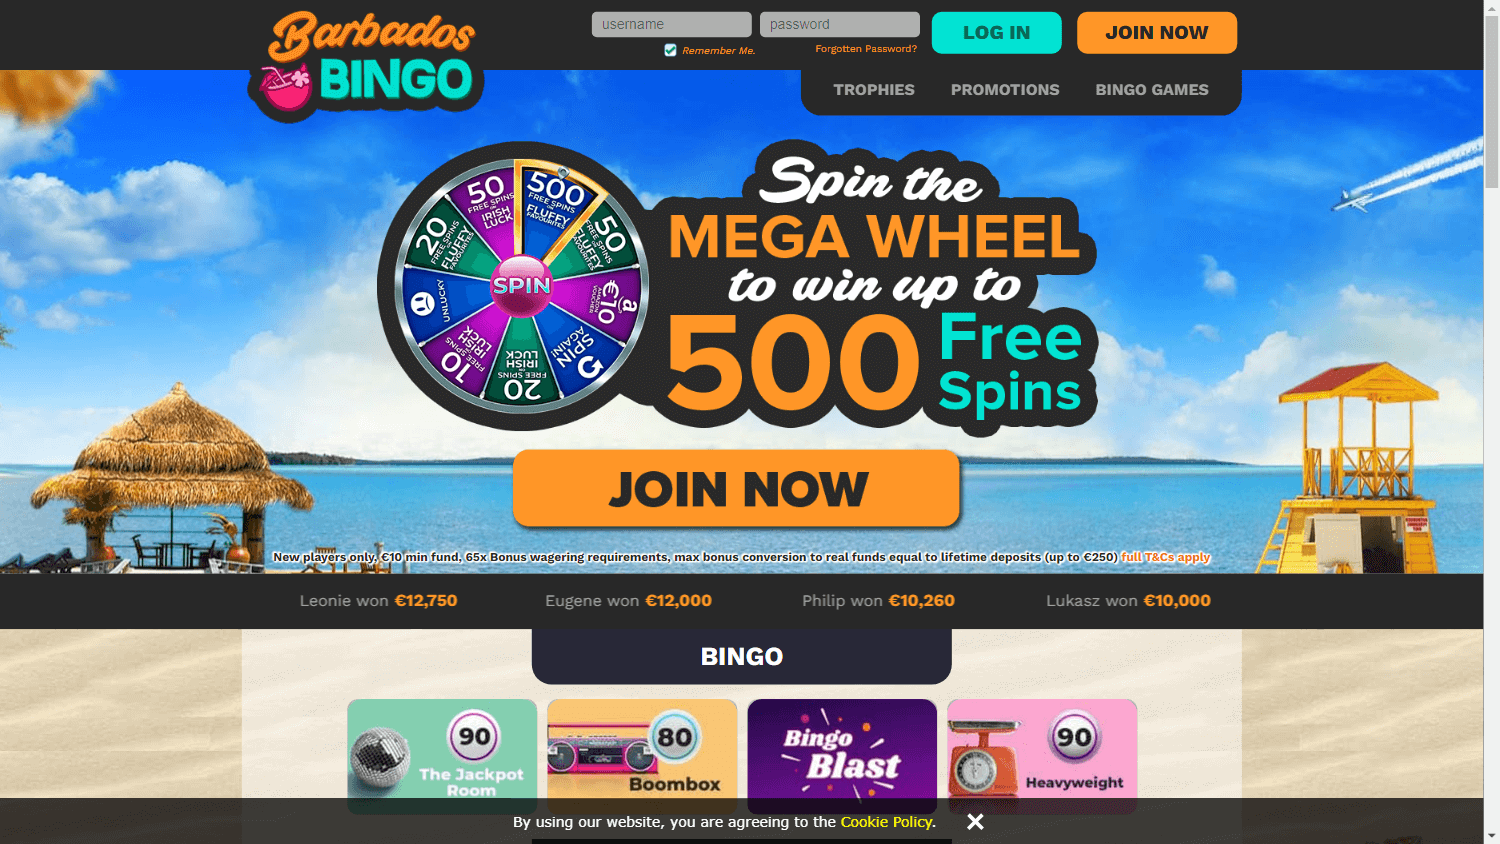 barbados_bingo_casino_homepage_desktop